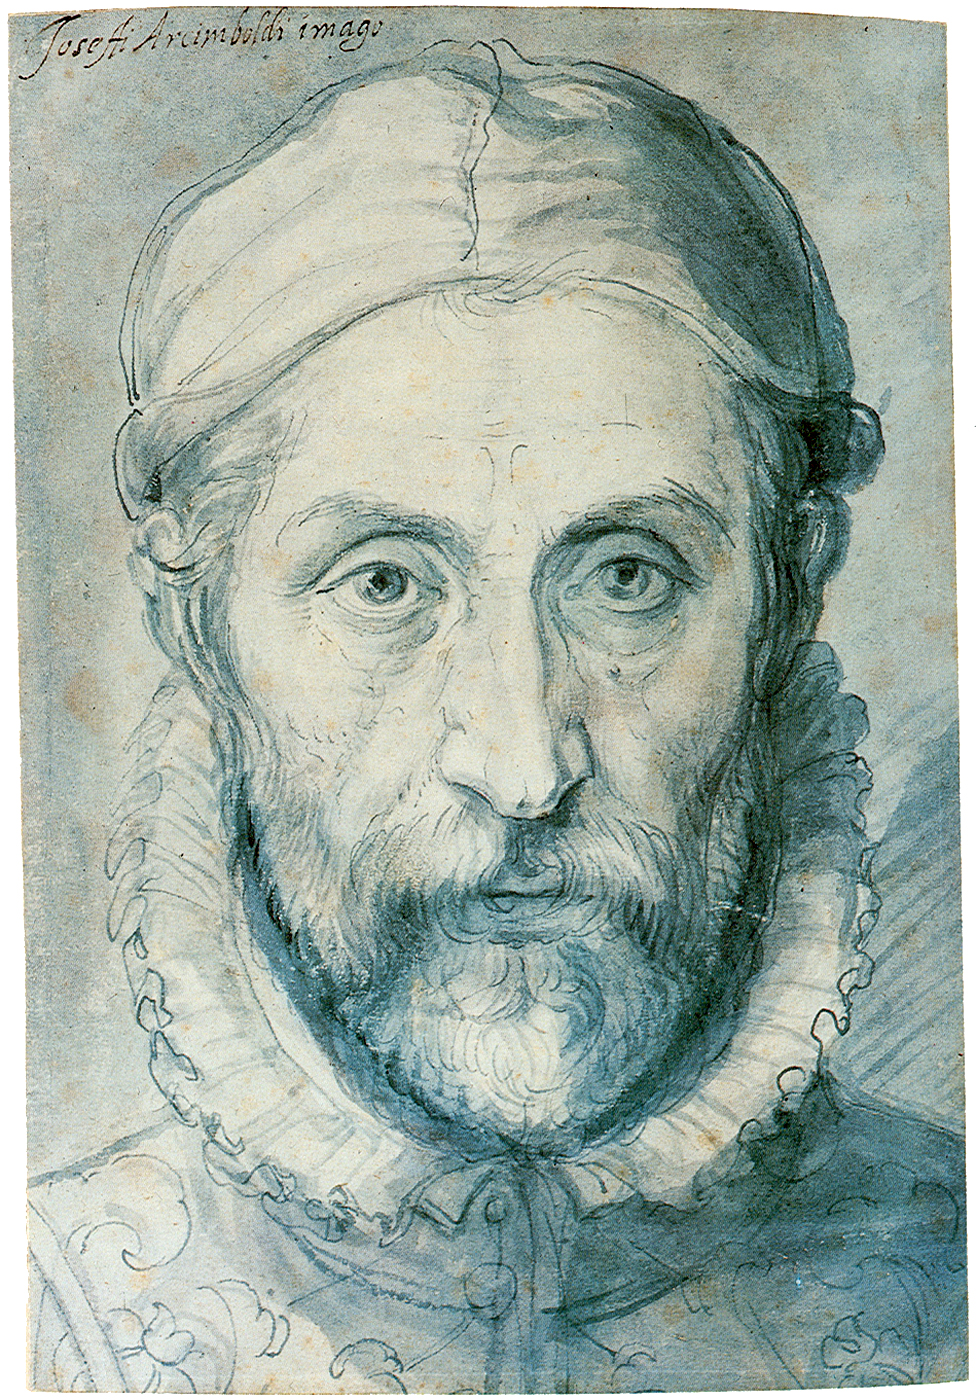 Τζουζέπε Αρτσιμπόλντο - 1526/7 - 11 Ιουλίου 1593